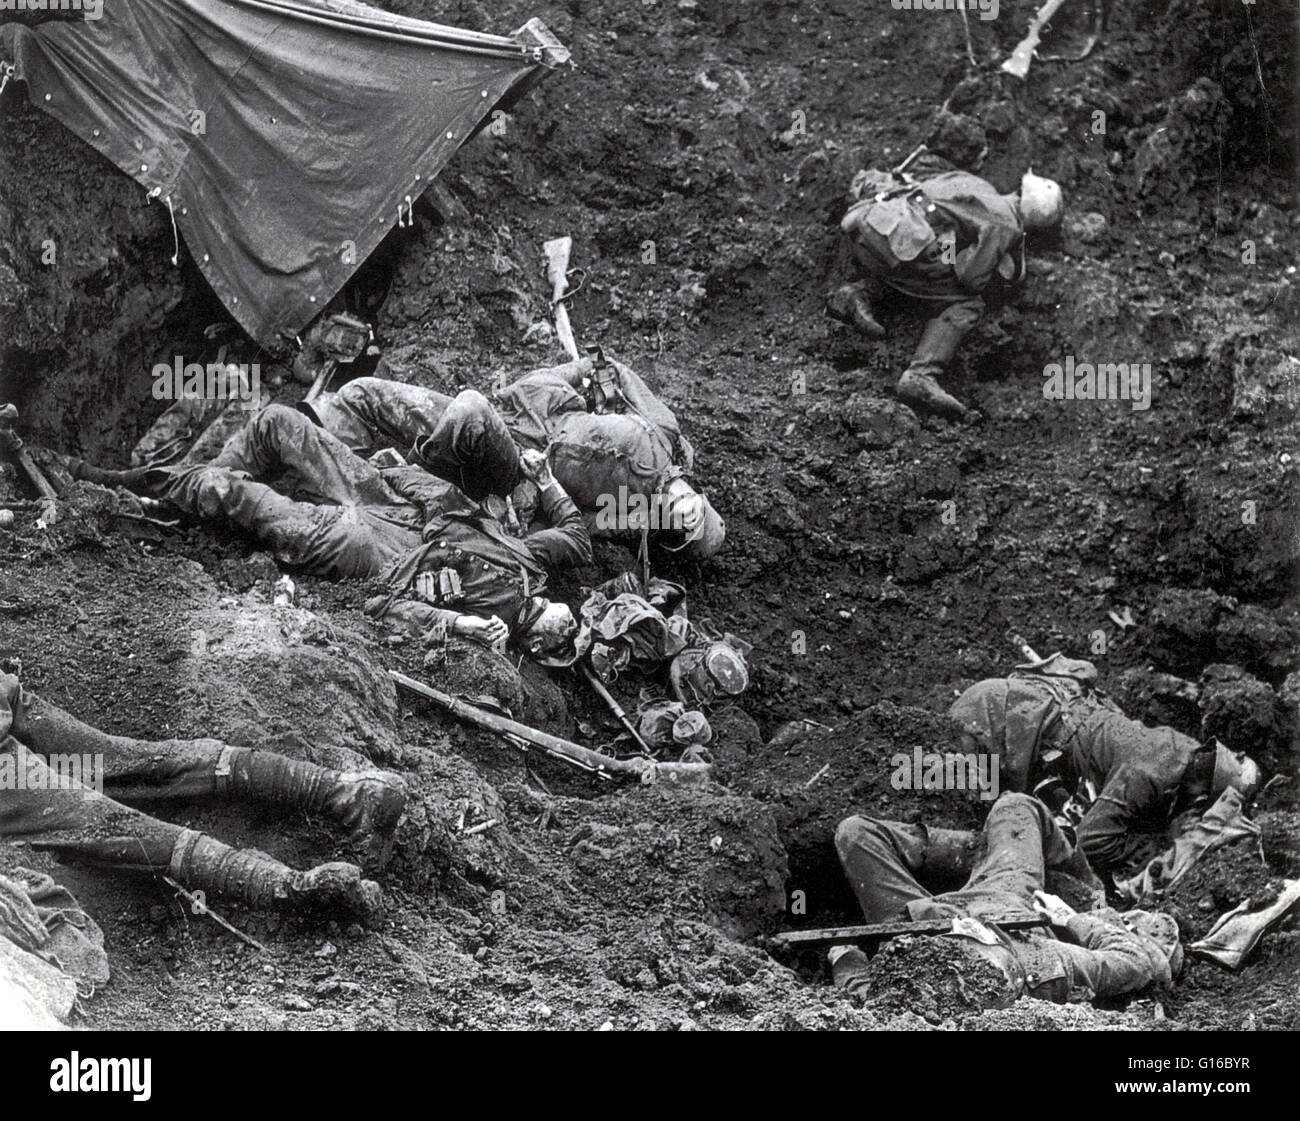 La battaglia di Passchendaele è stata una campagna della prima guerra mondiale combattuta dai britannici e i loro alleati contro l'impero tedesco. La battaglia ha avuto luogo sul fronte occidentale, tra luglio e novembre 1917, per il controllo delle creste a sud e a est della città belga o Foto Stock